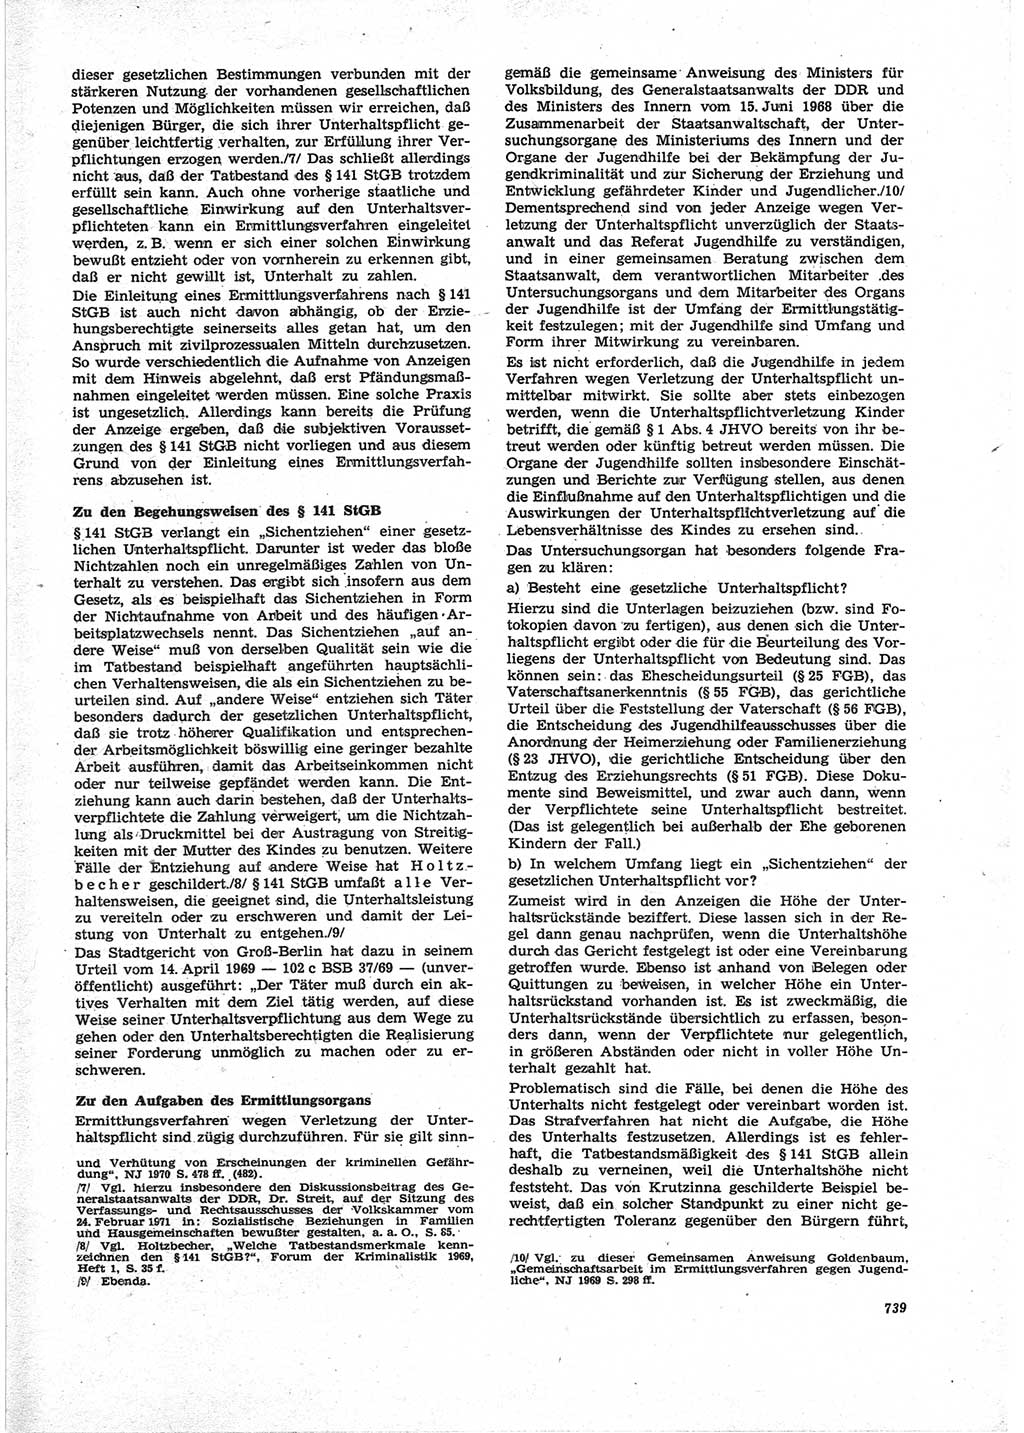 Neue Justiz (NJ), Zeitschrift für Recht und Rechtswissenschaft [Deutsche Demokratische Republik (DDR)], 25. Jahrgang 1971, Seite 739 (NJ DDR 1971, S. 739)